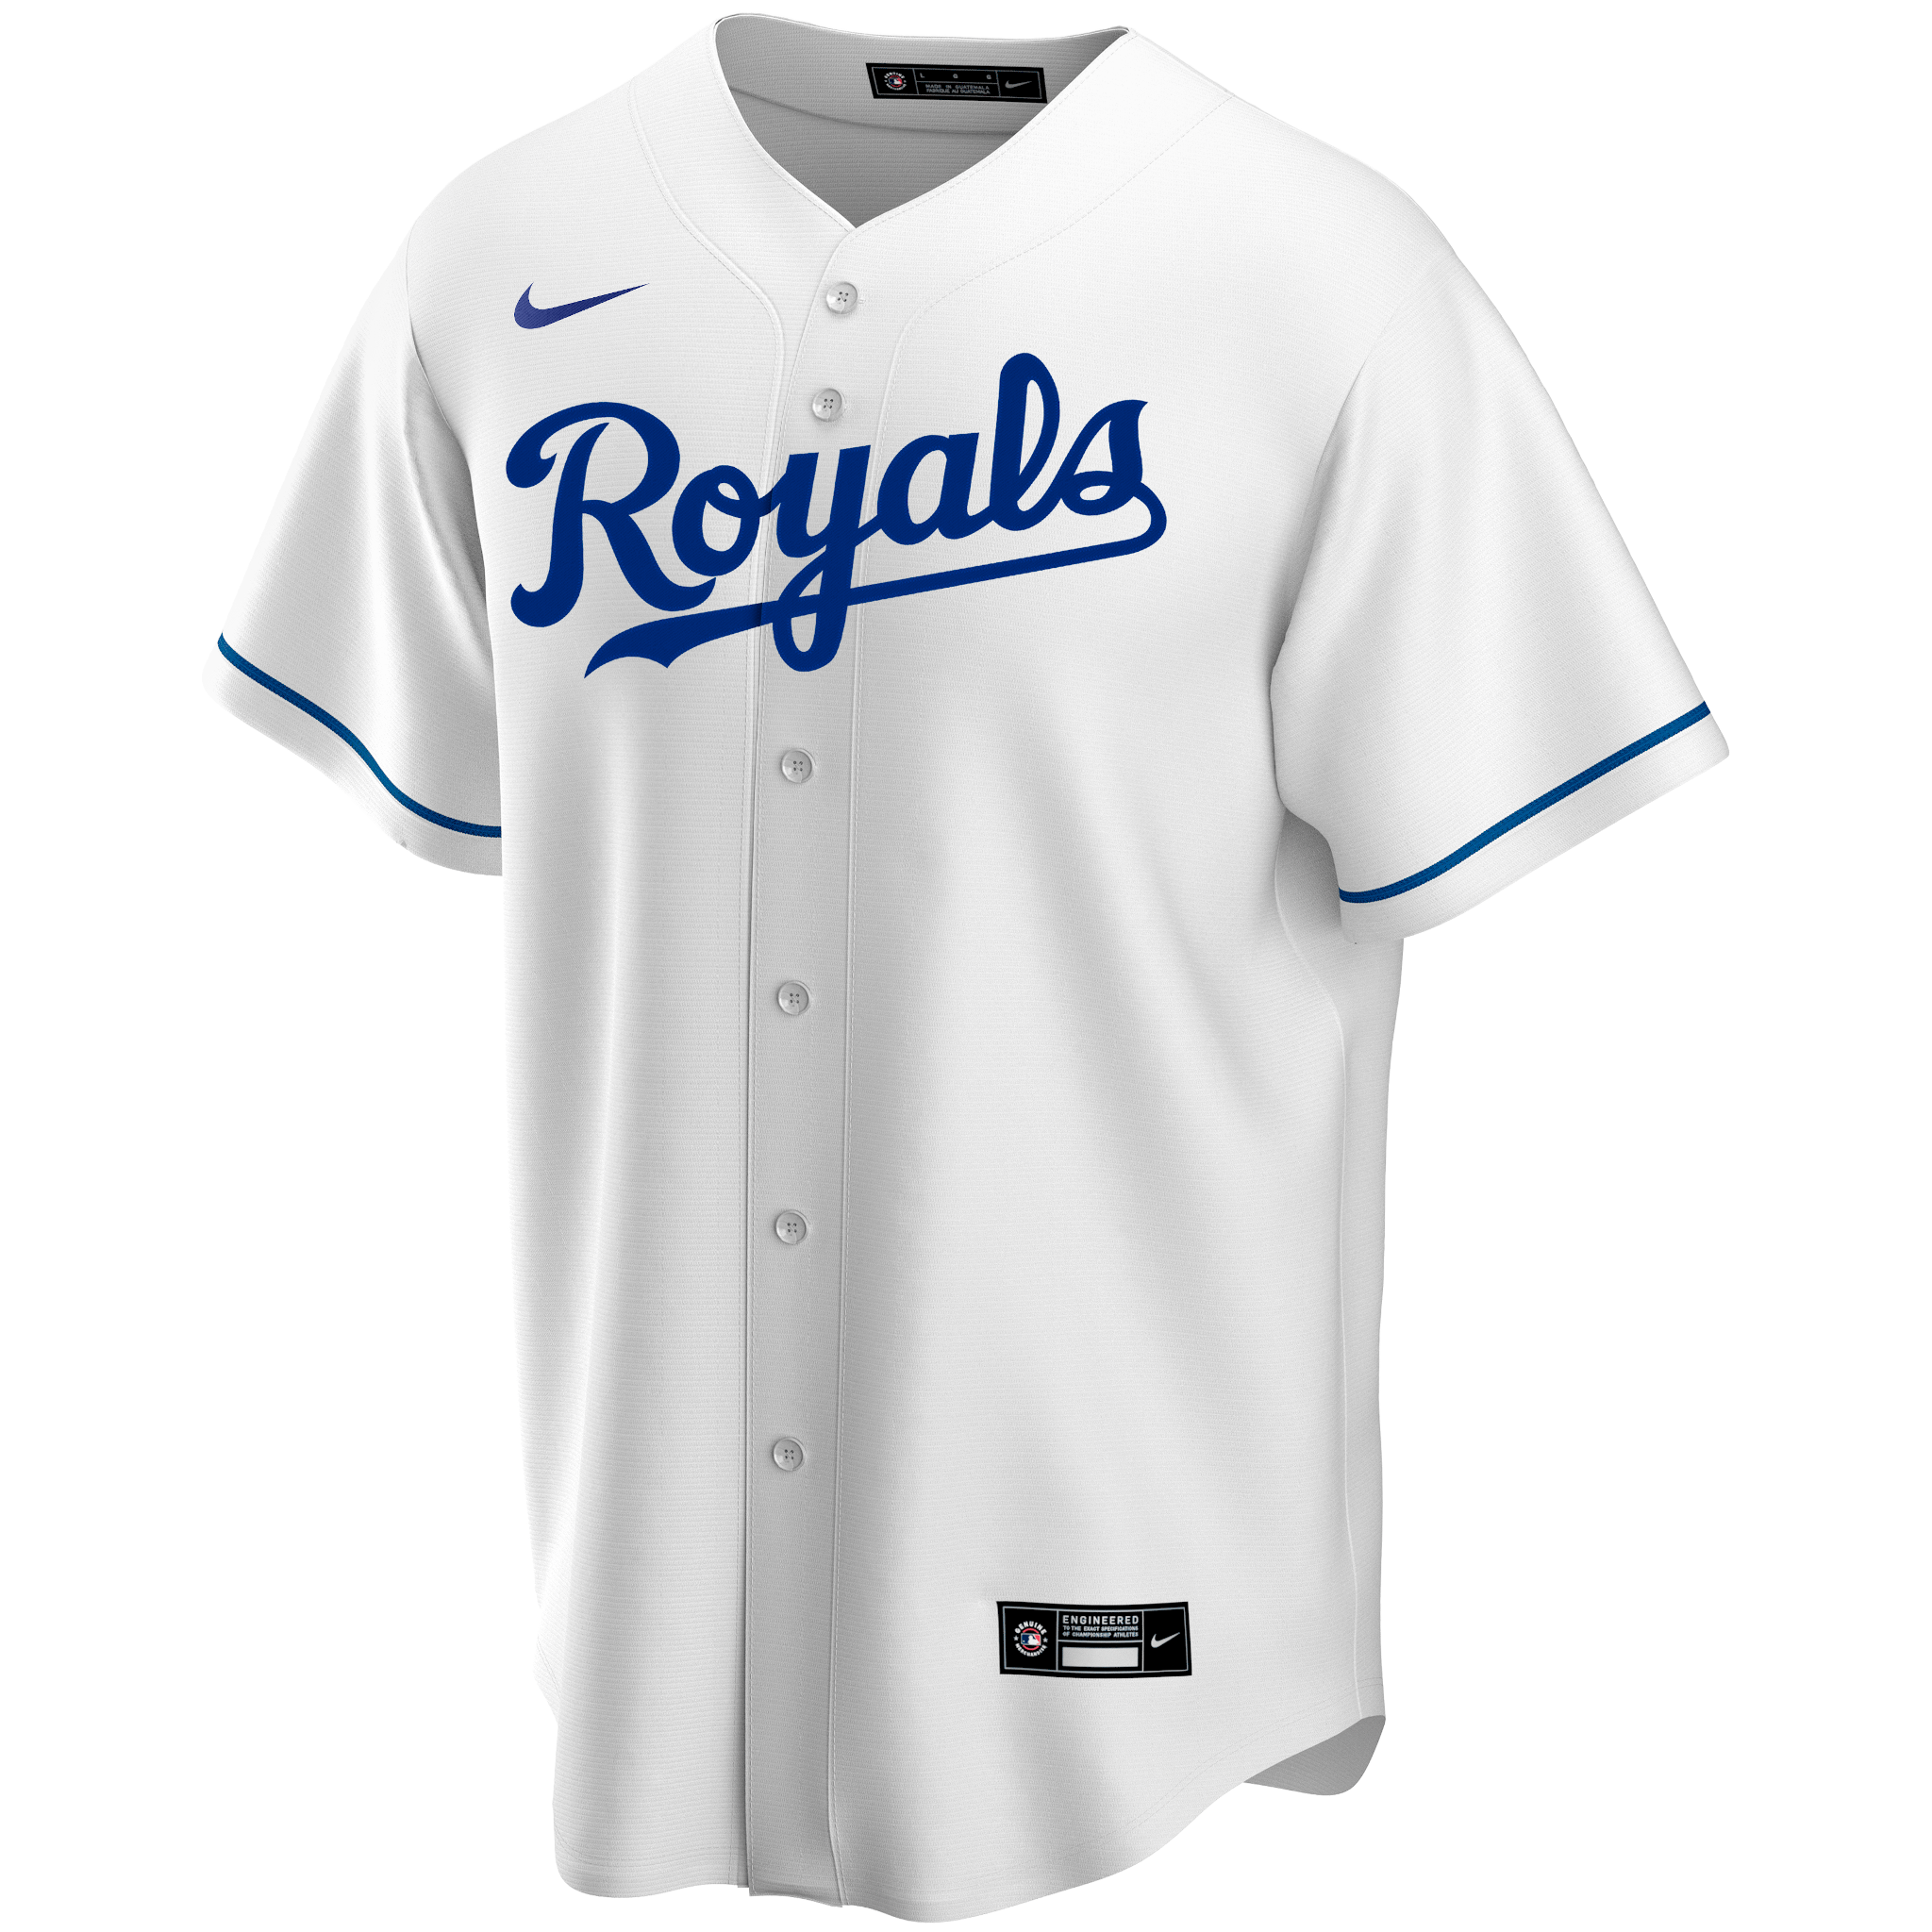 Kansas City Royals Nike Official Replica Home Jersey - Mens